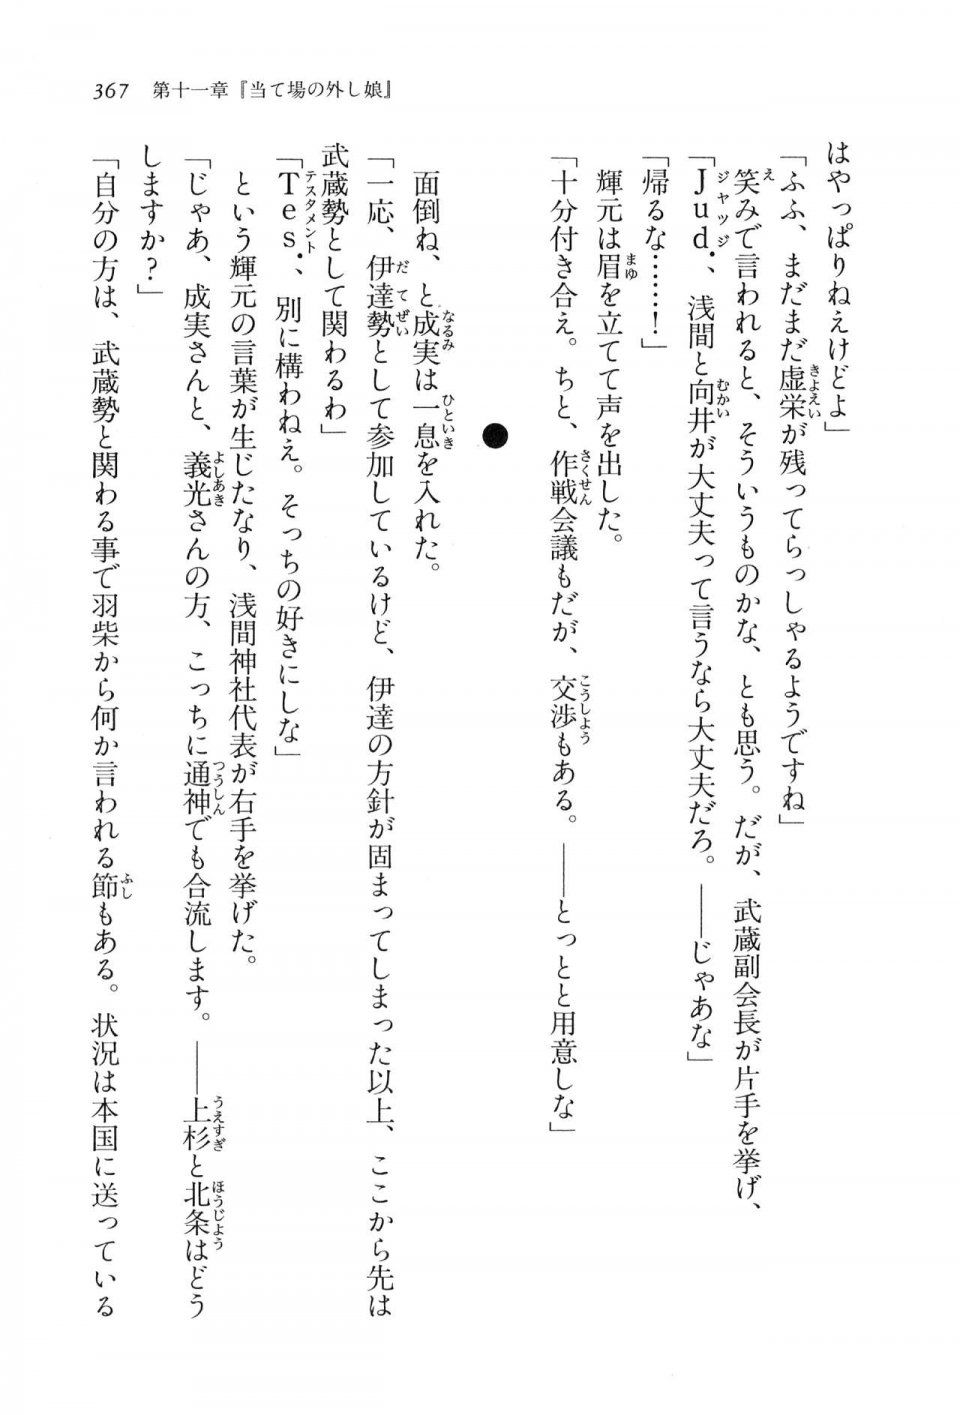 Kyoukai Senjou no Horizon LN Vol 16(7A) - Photo #367